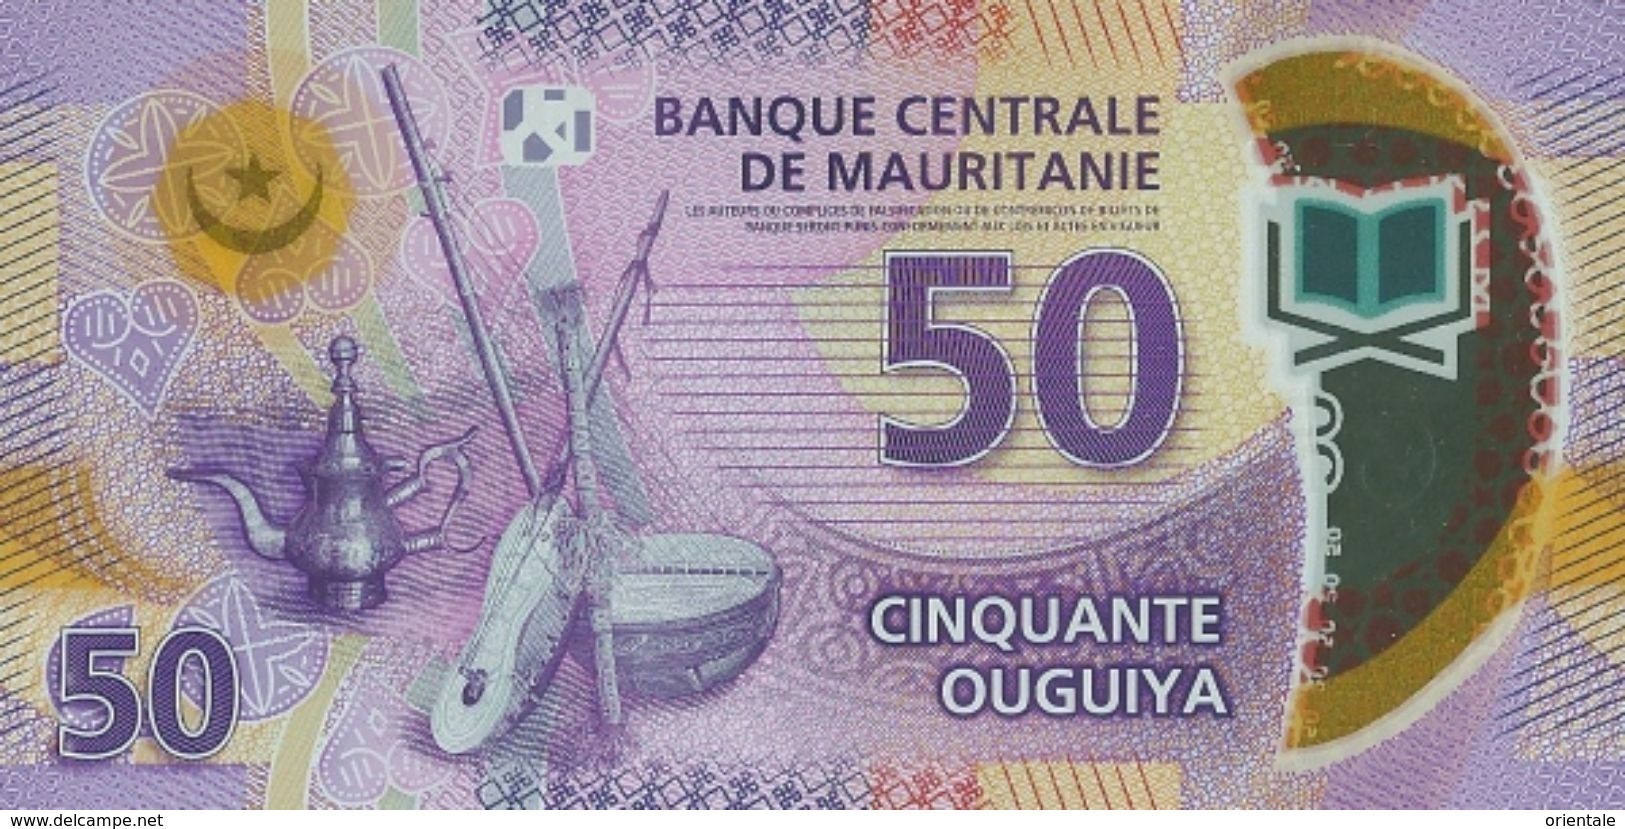 MAURITANIA P. 22 50 O 2017 UNC - Mauritania